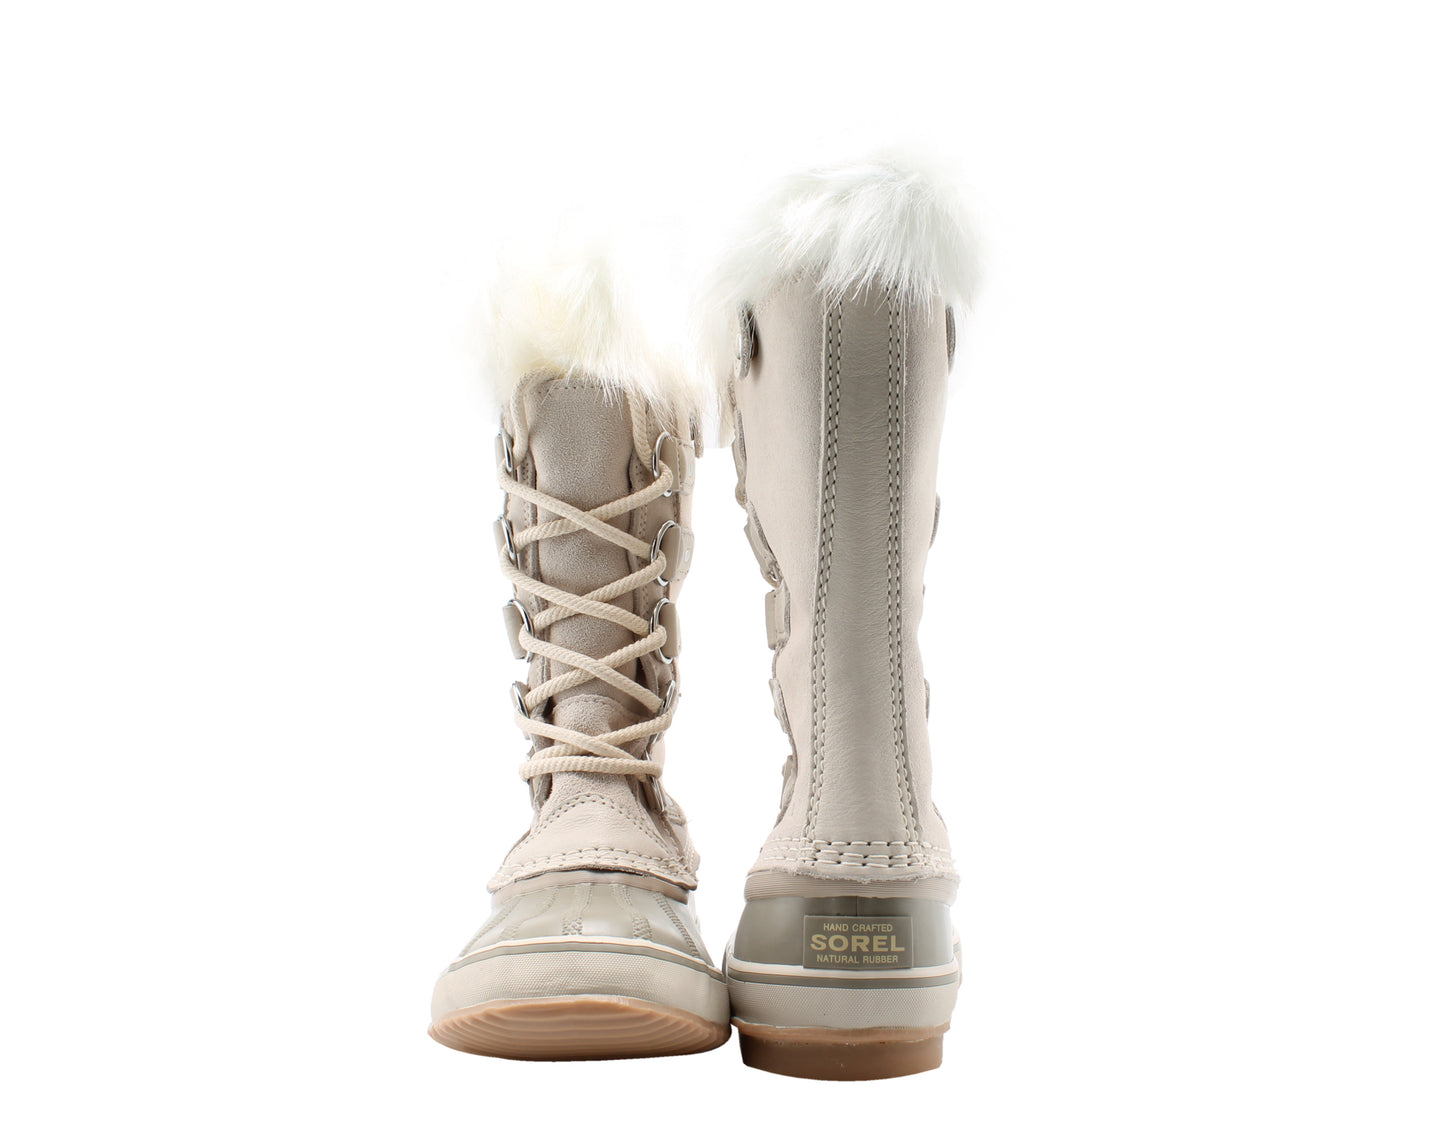 Sorel Joan of Arctic Women's Boots